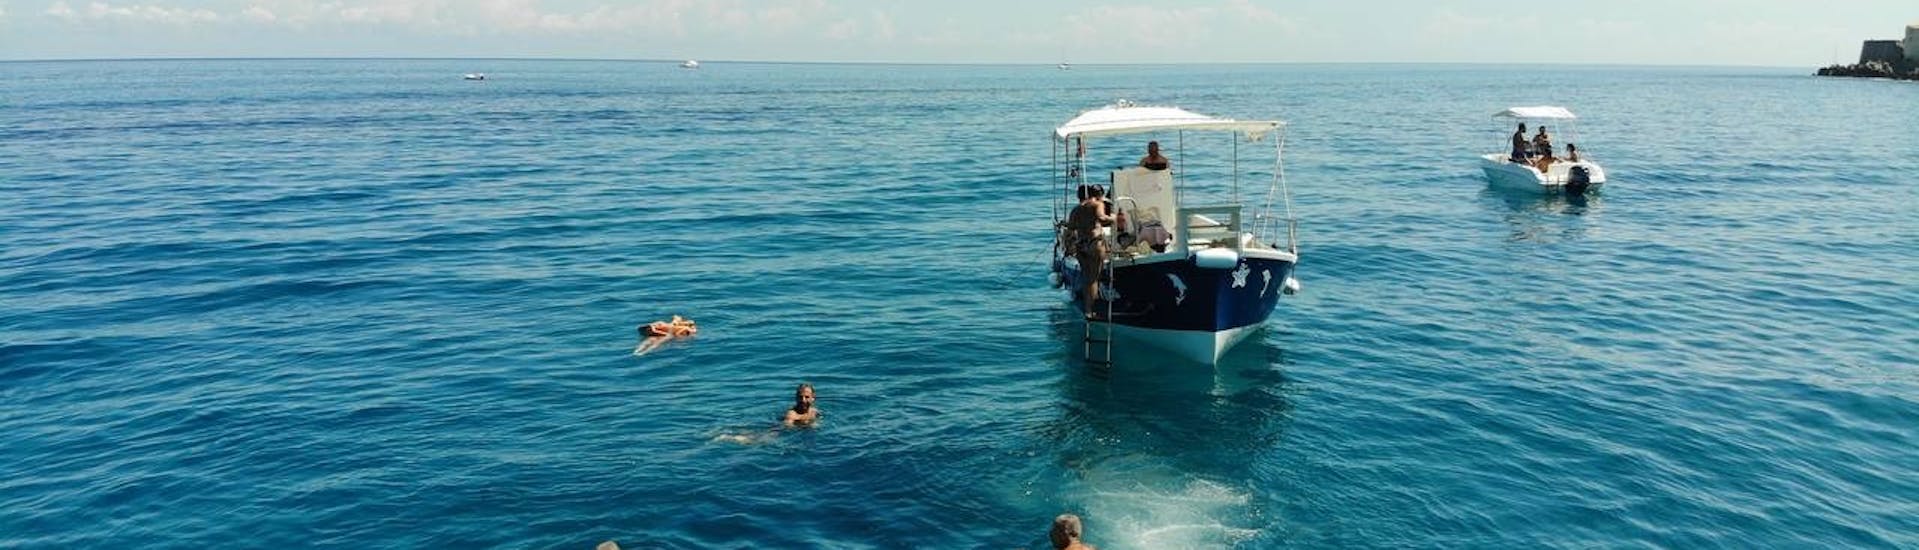 Foto von Personen, die den Stop zum Schnorcheln und Schwimmen genießen bei der Bootstour um Cefalù mit Schnorcheln und Aperitif.